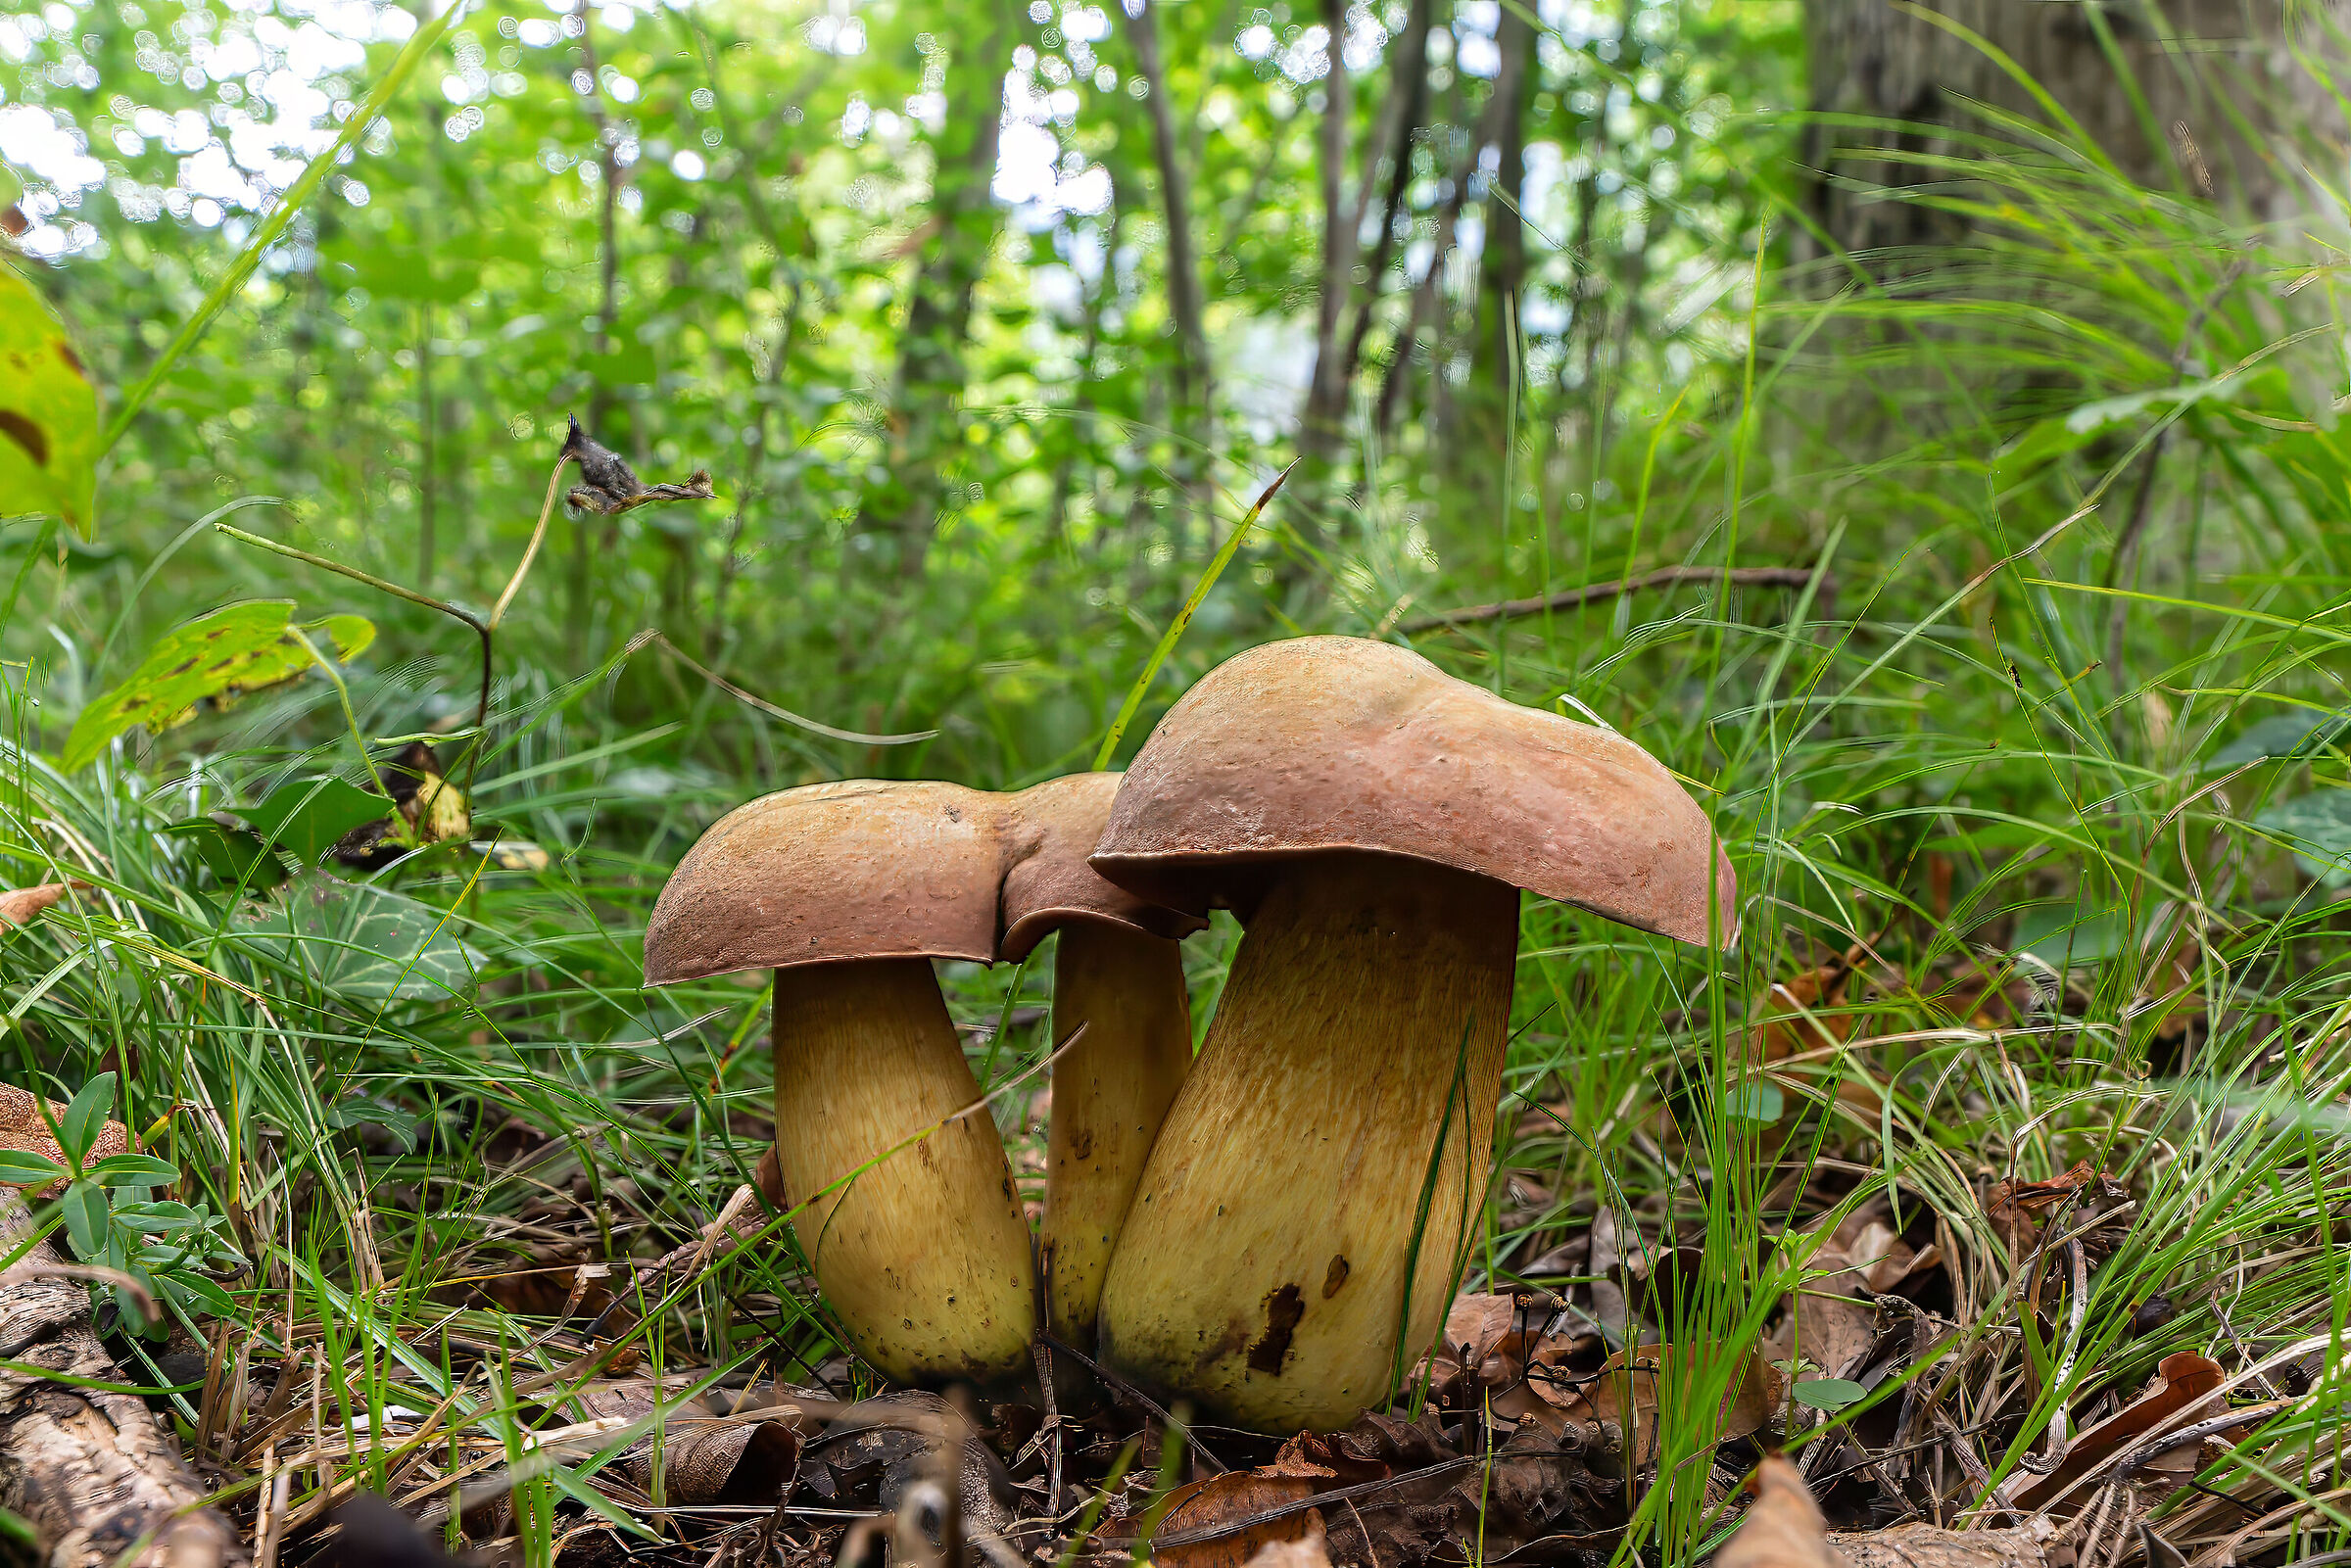 Mushrooms ( not edible )...